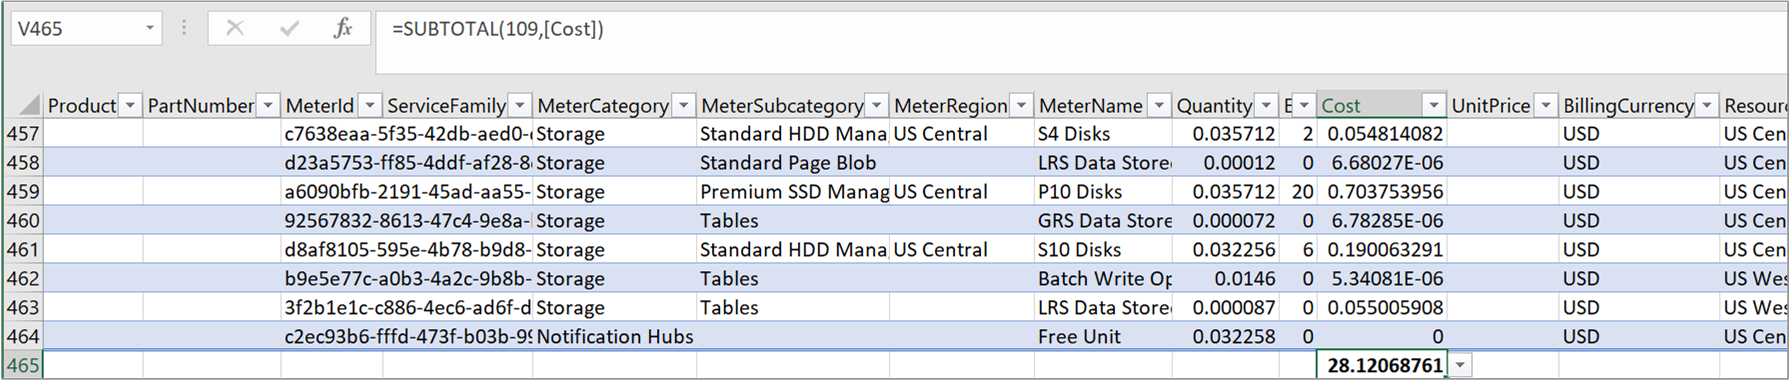 Captura de tela mostrando um arquivo de uso CSV de exemplo com custo resumido.